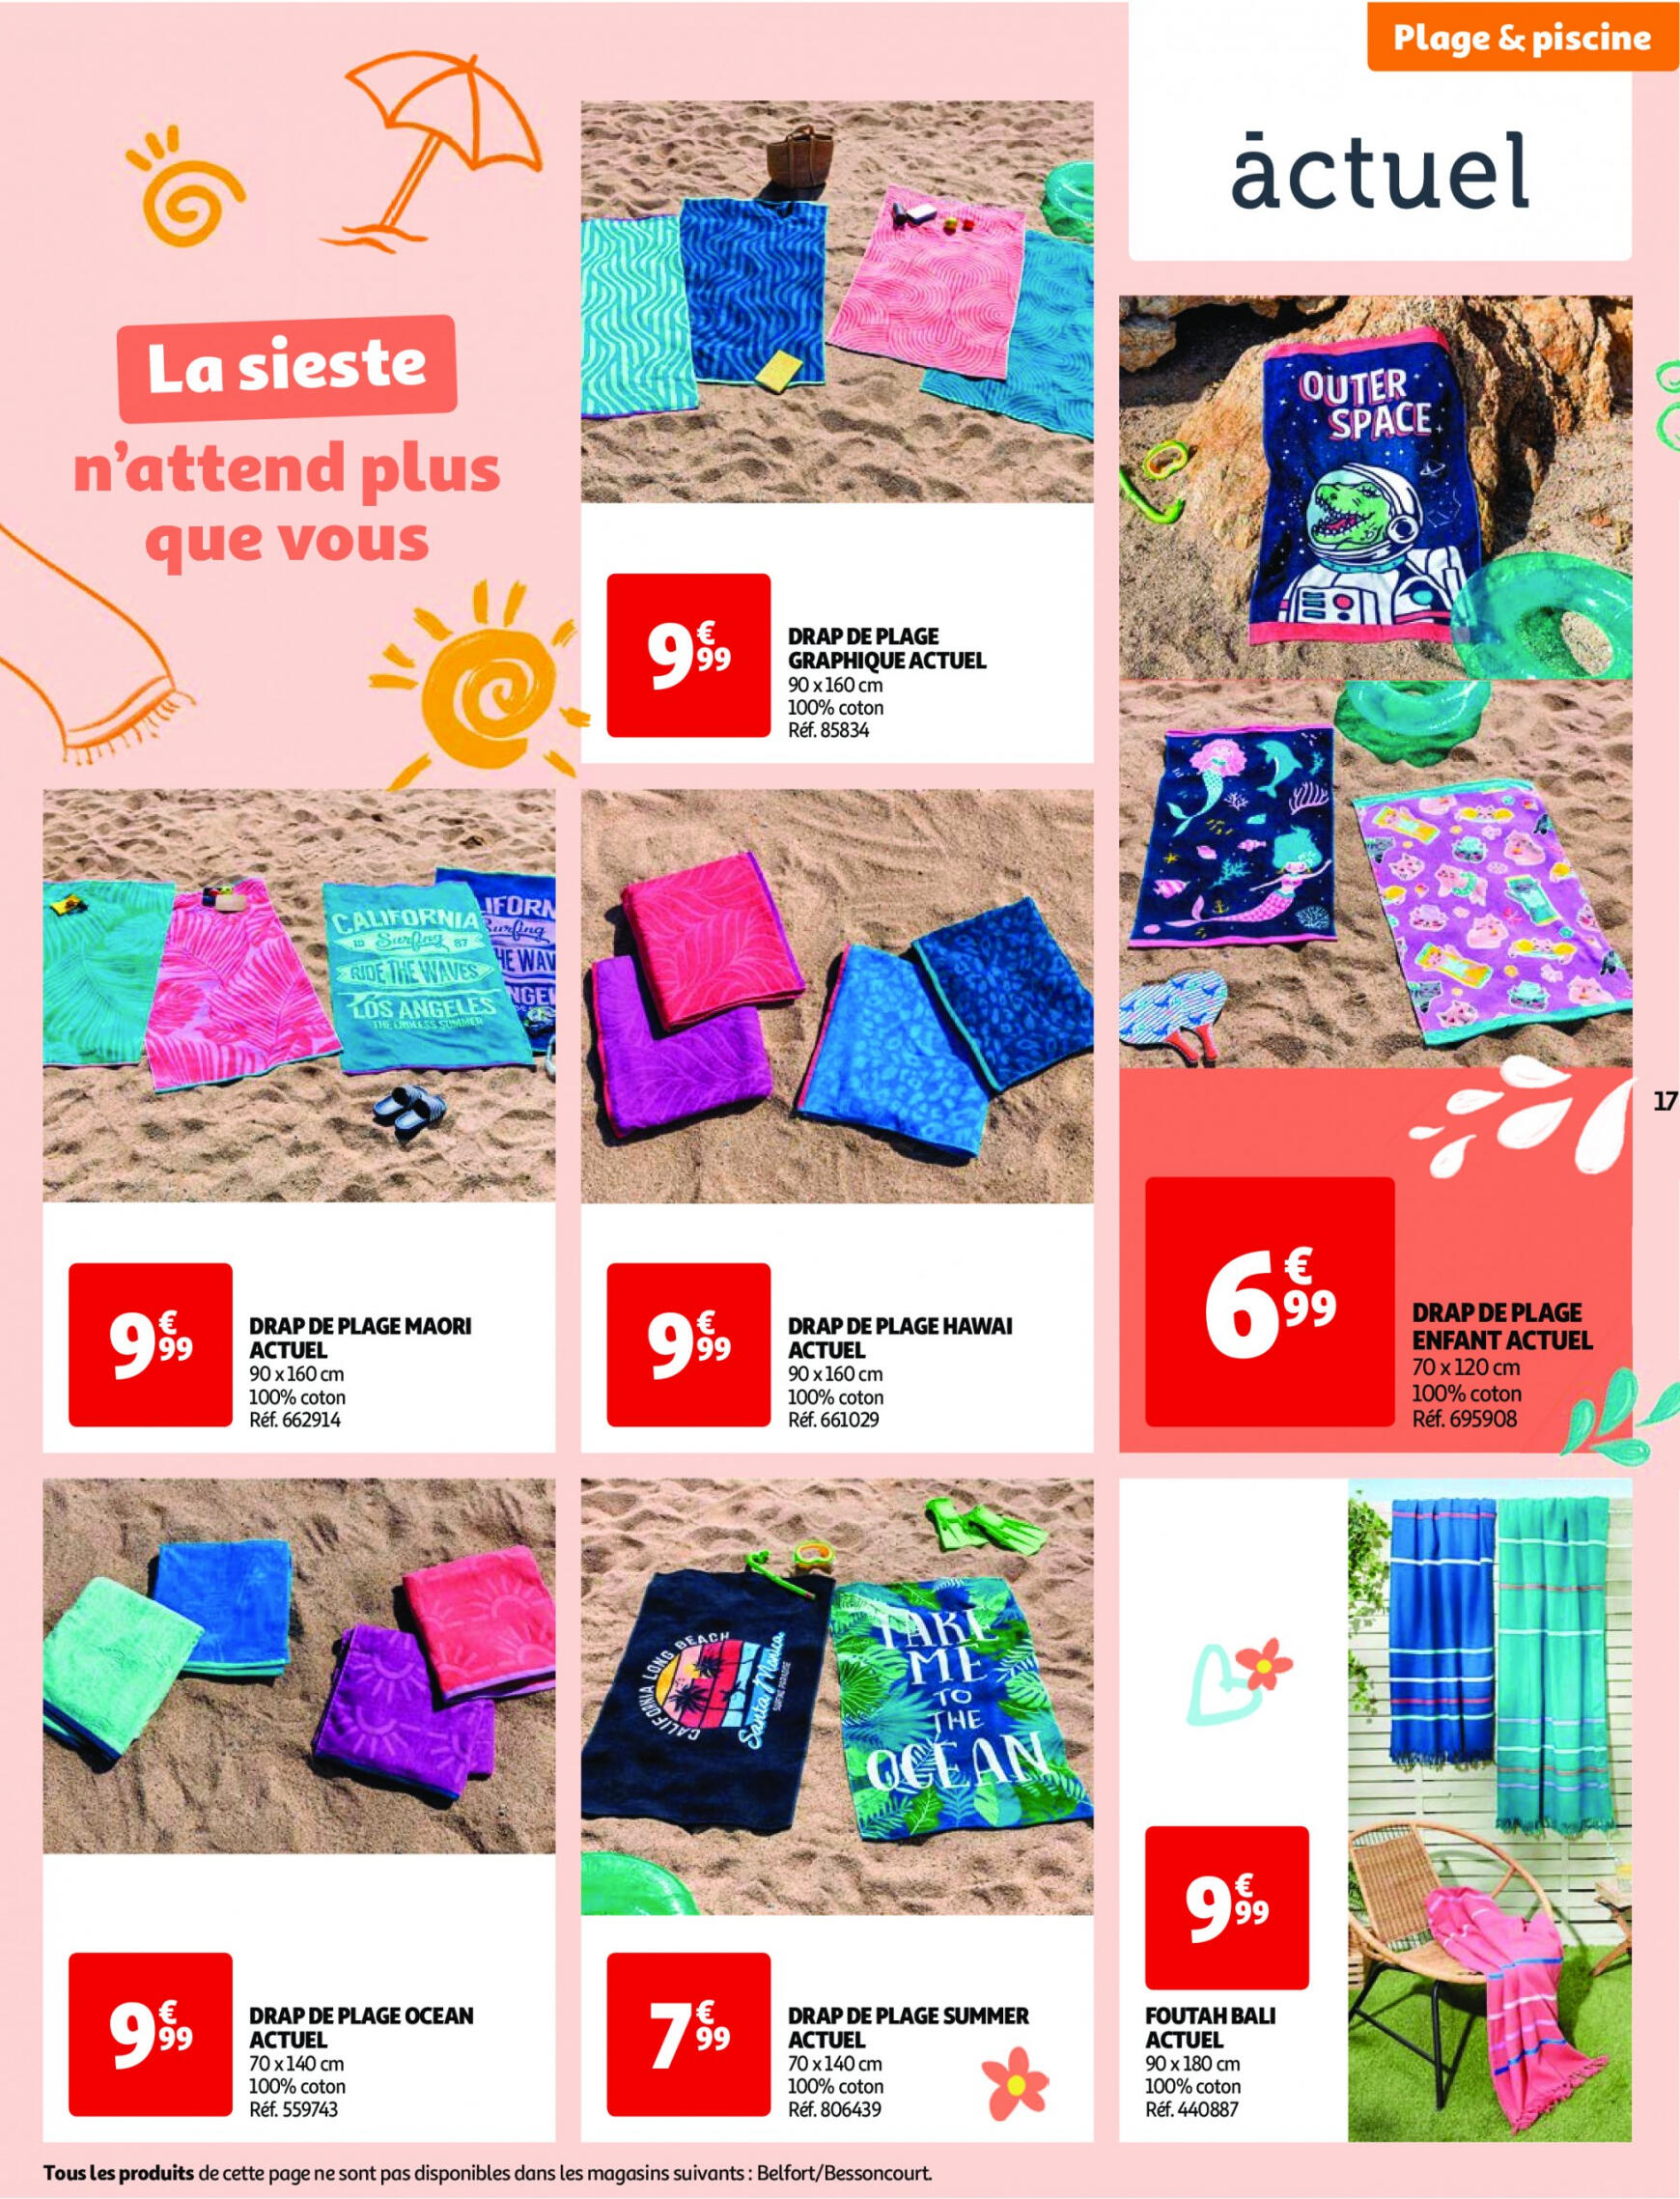 auchan - Auchan - Nos exclusivités Summer pour s'amuser tout l'été folder huidig 14.05. - 15.06. - page: 17